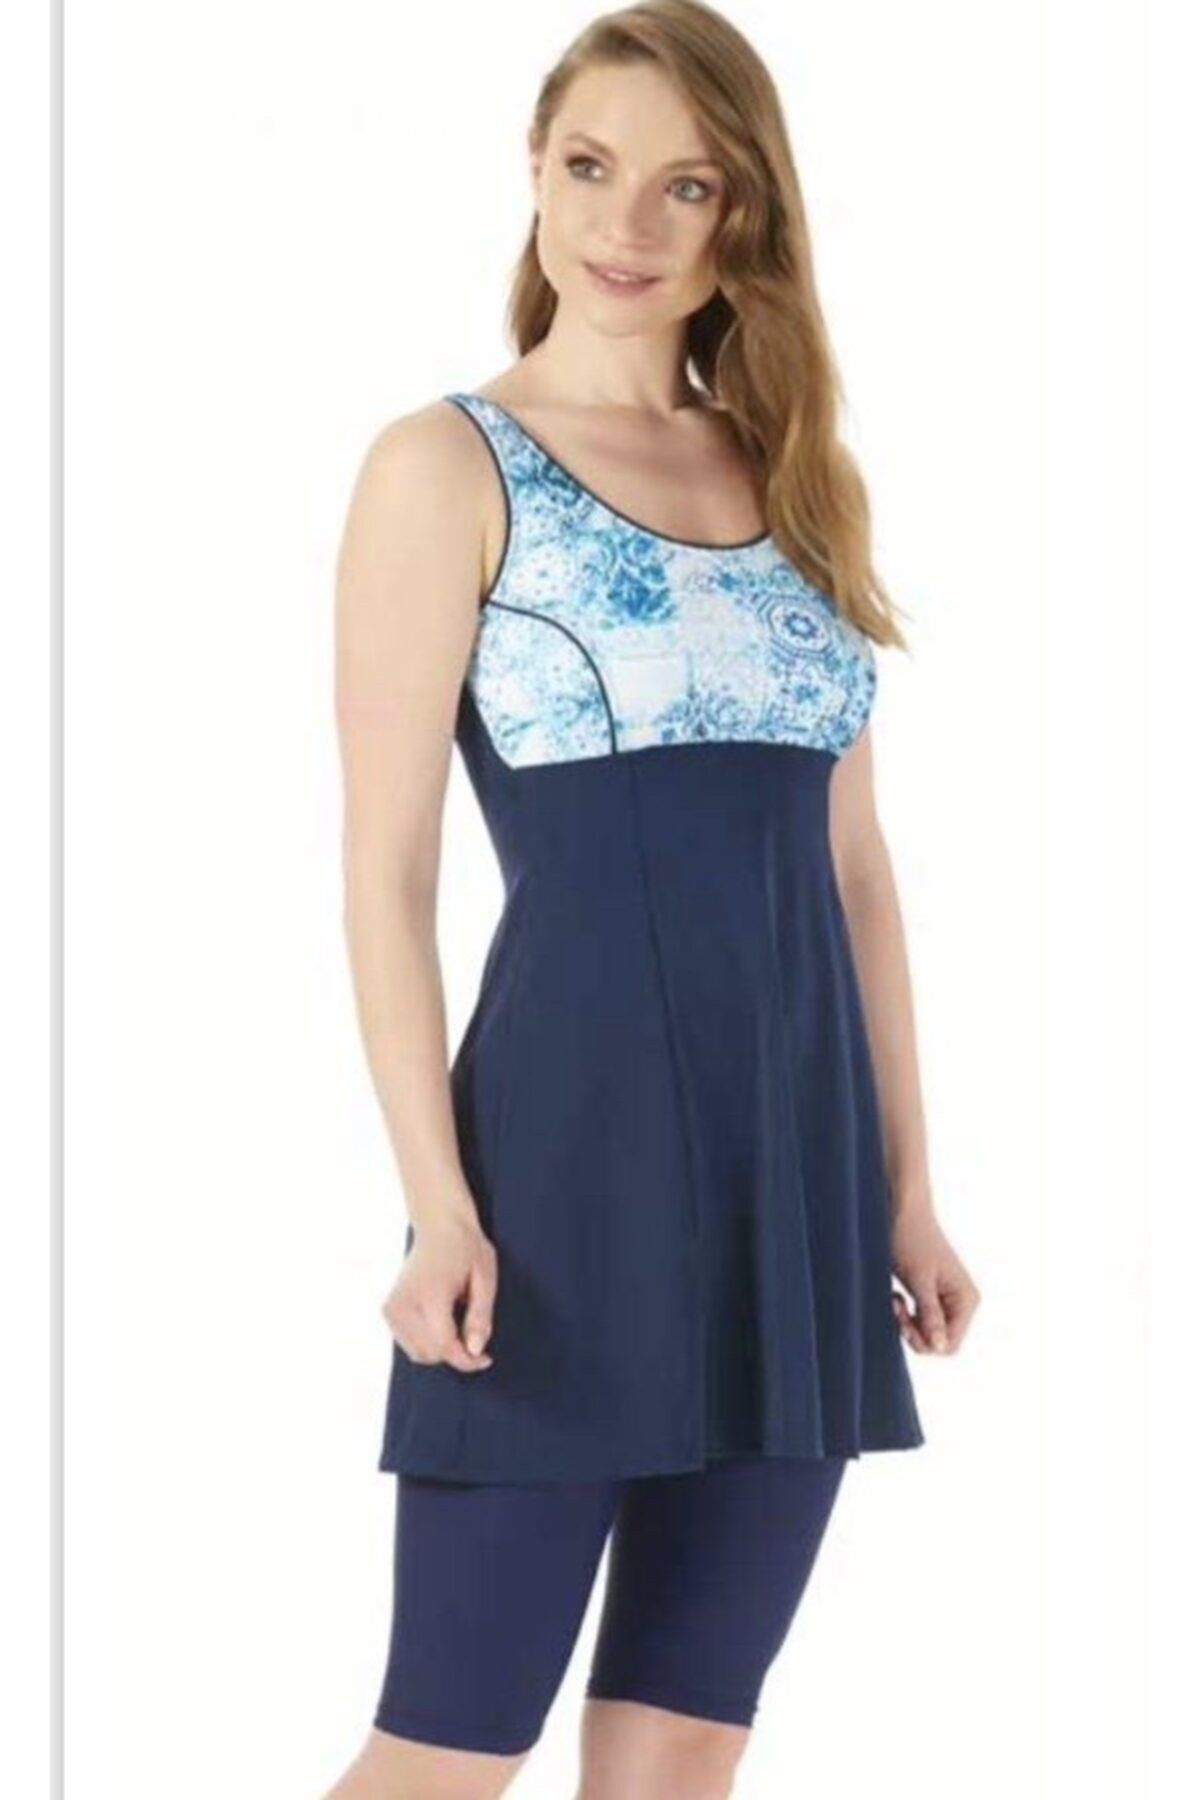 Estiva Kadın Mavi Desenli Taytlı Elbise Mayo